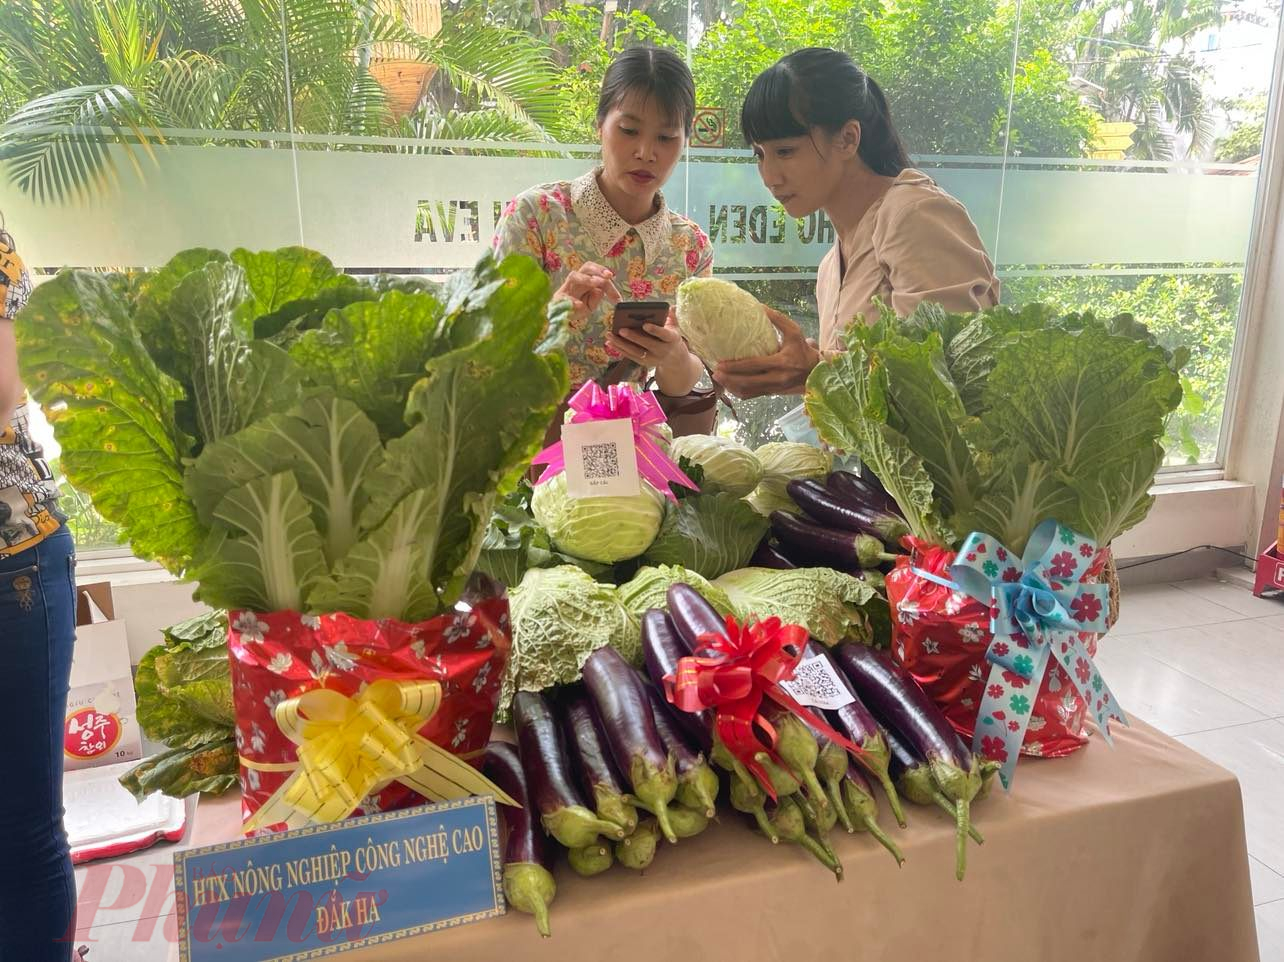 Thành viên HTX Nông nghiệp Công nghệ cao xã Đăk Hà, tỉnh Đăk Nông giới thiệu sản phẩm rau, củ đạt chất lượng.